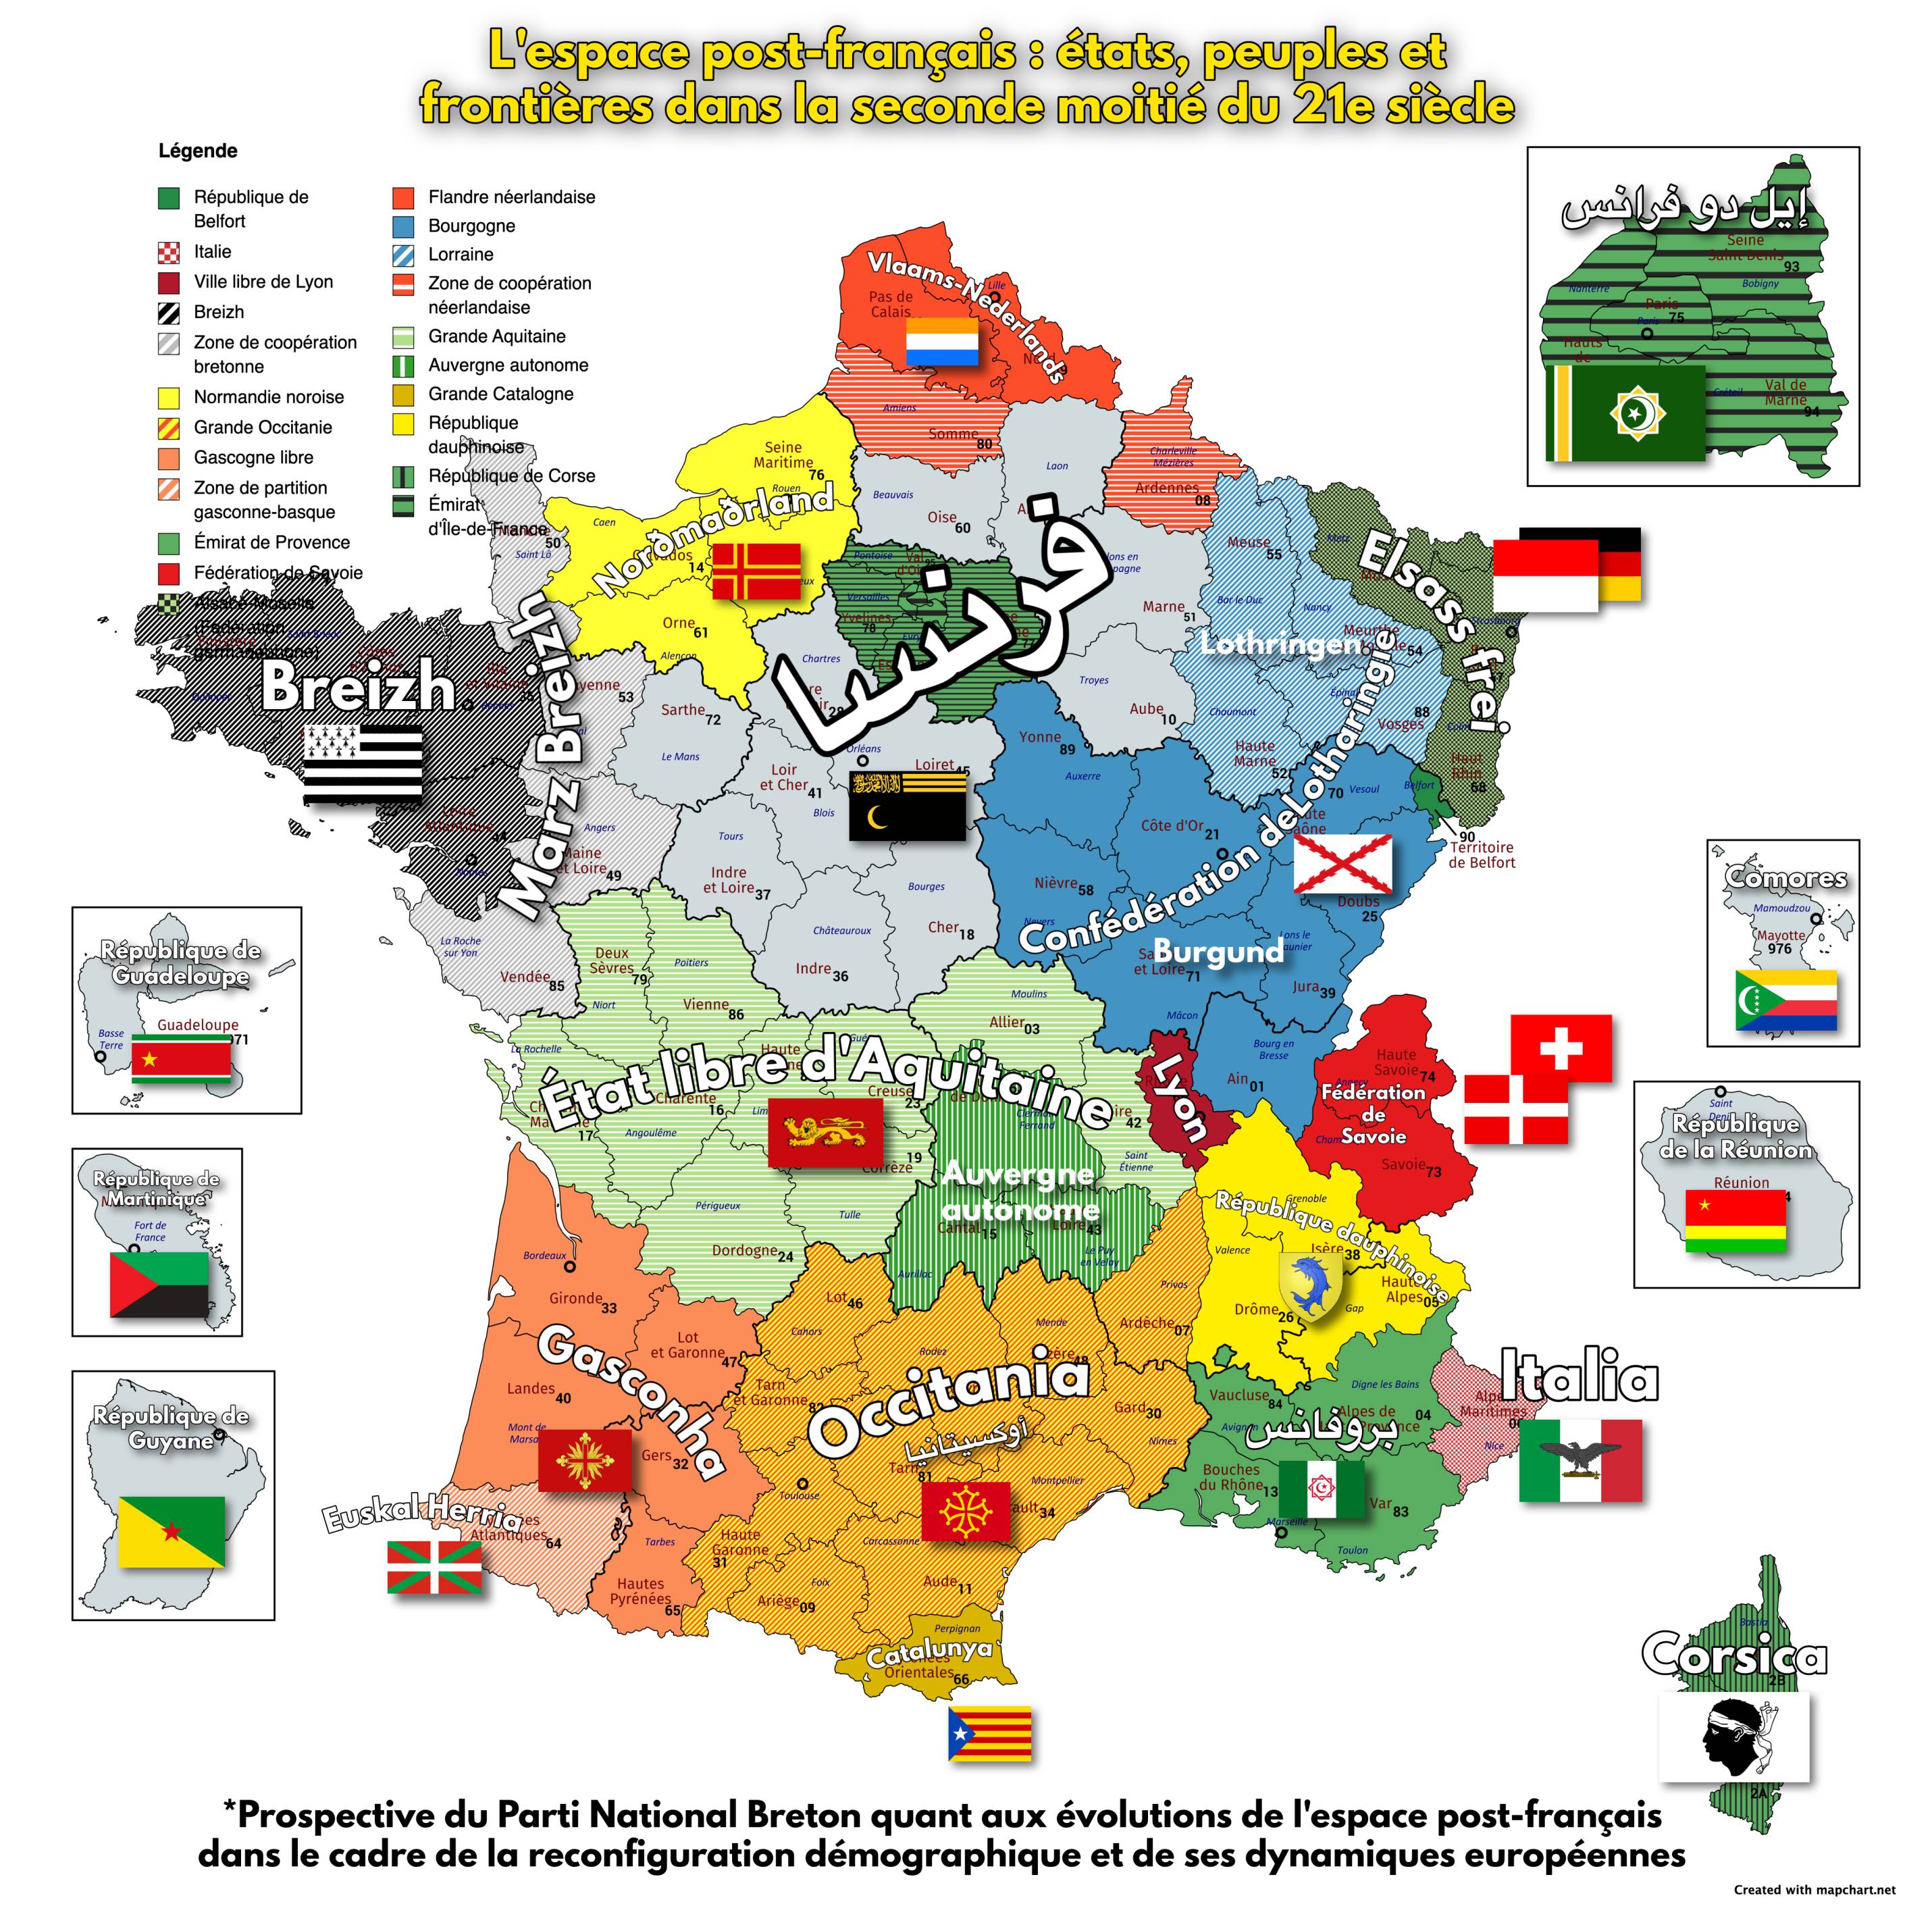 Karte der strategischen Ausrichtung der Bretonische Nationalpartei, die sich auf die Dekolonisierung des postfranzösischen Raums bezieht